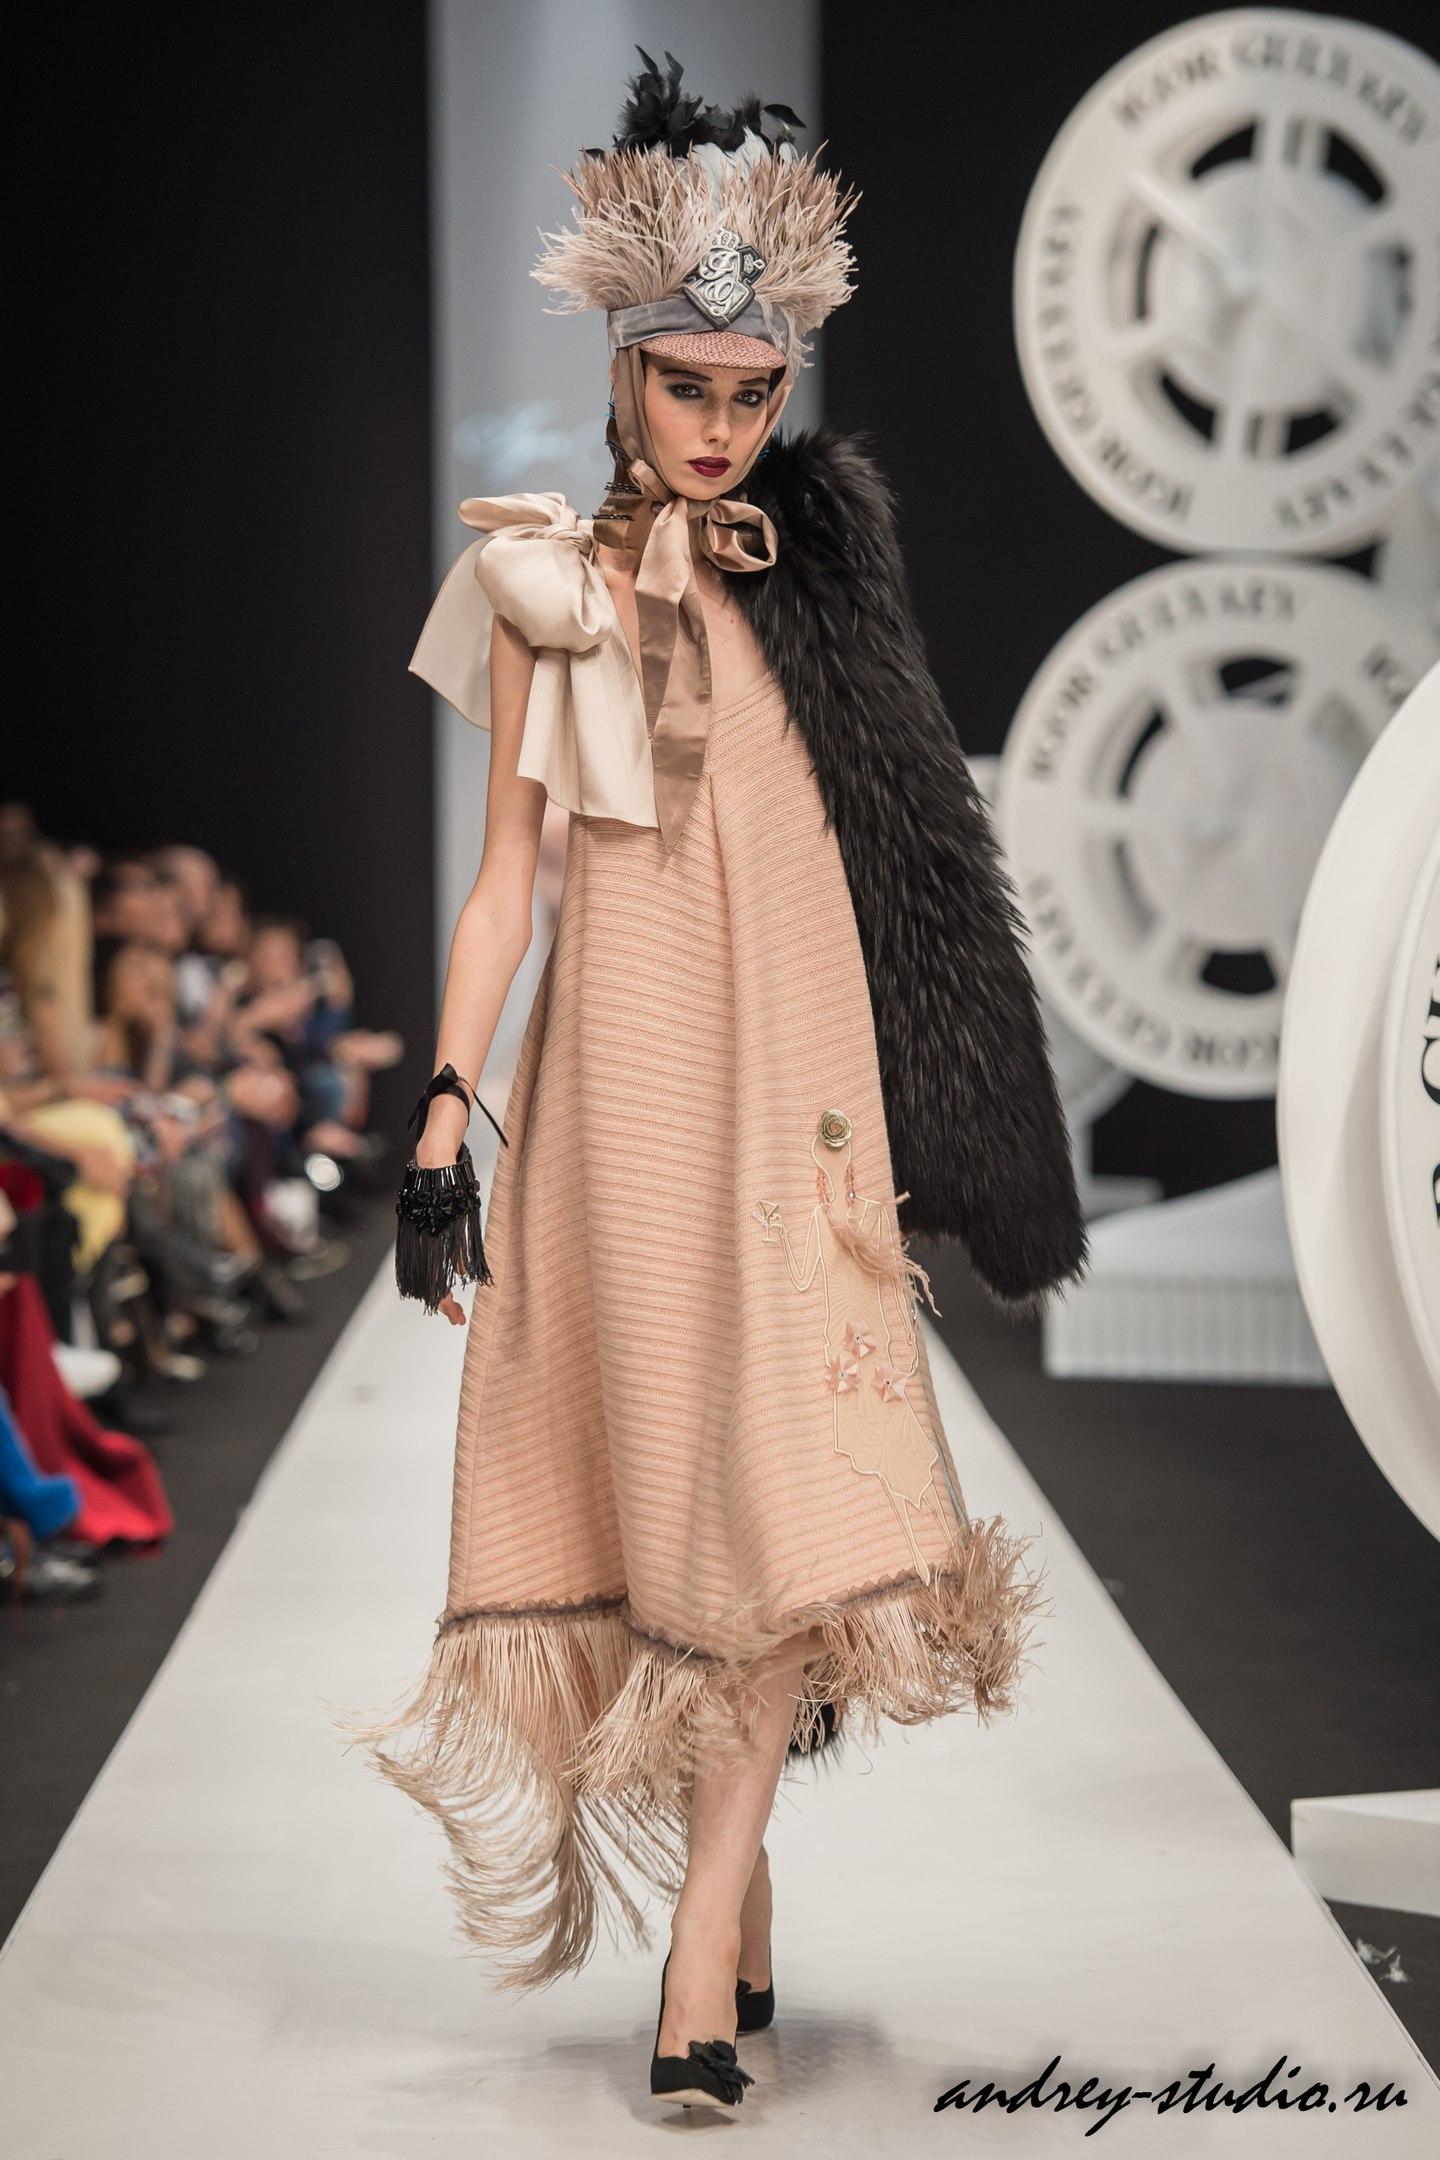 Показ новой коллекции Игоря Гуляева на Неделе Высокой моды Mercedes - Benz Fashion Week Russia 2017/18